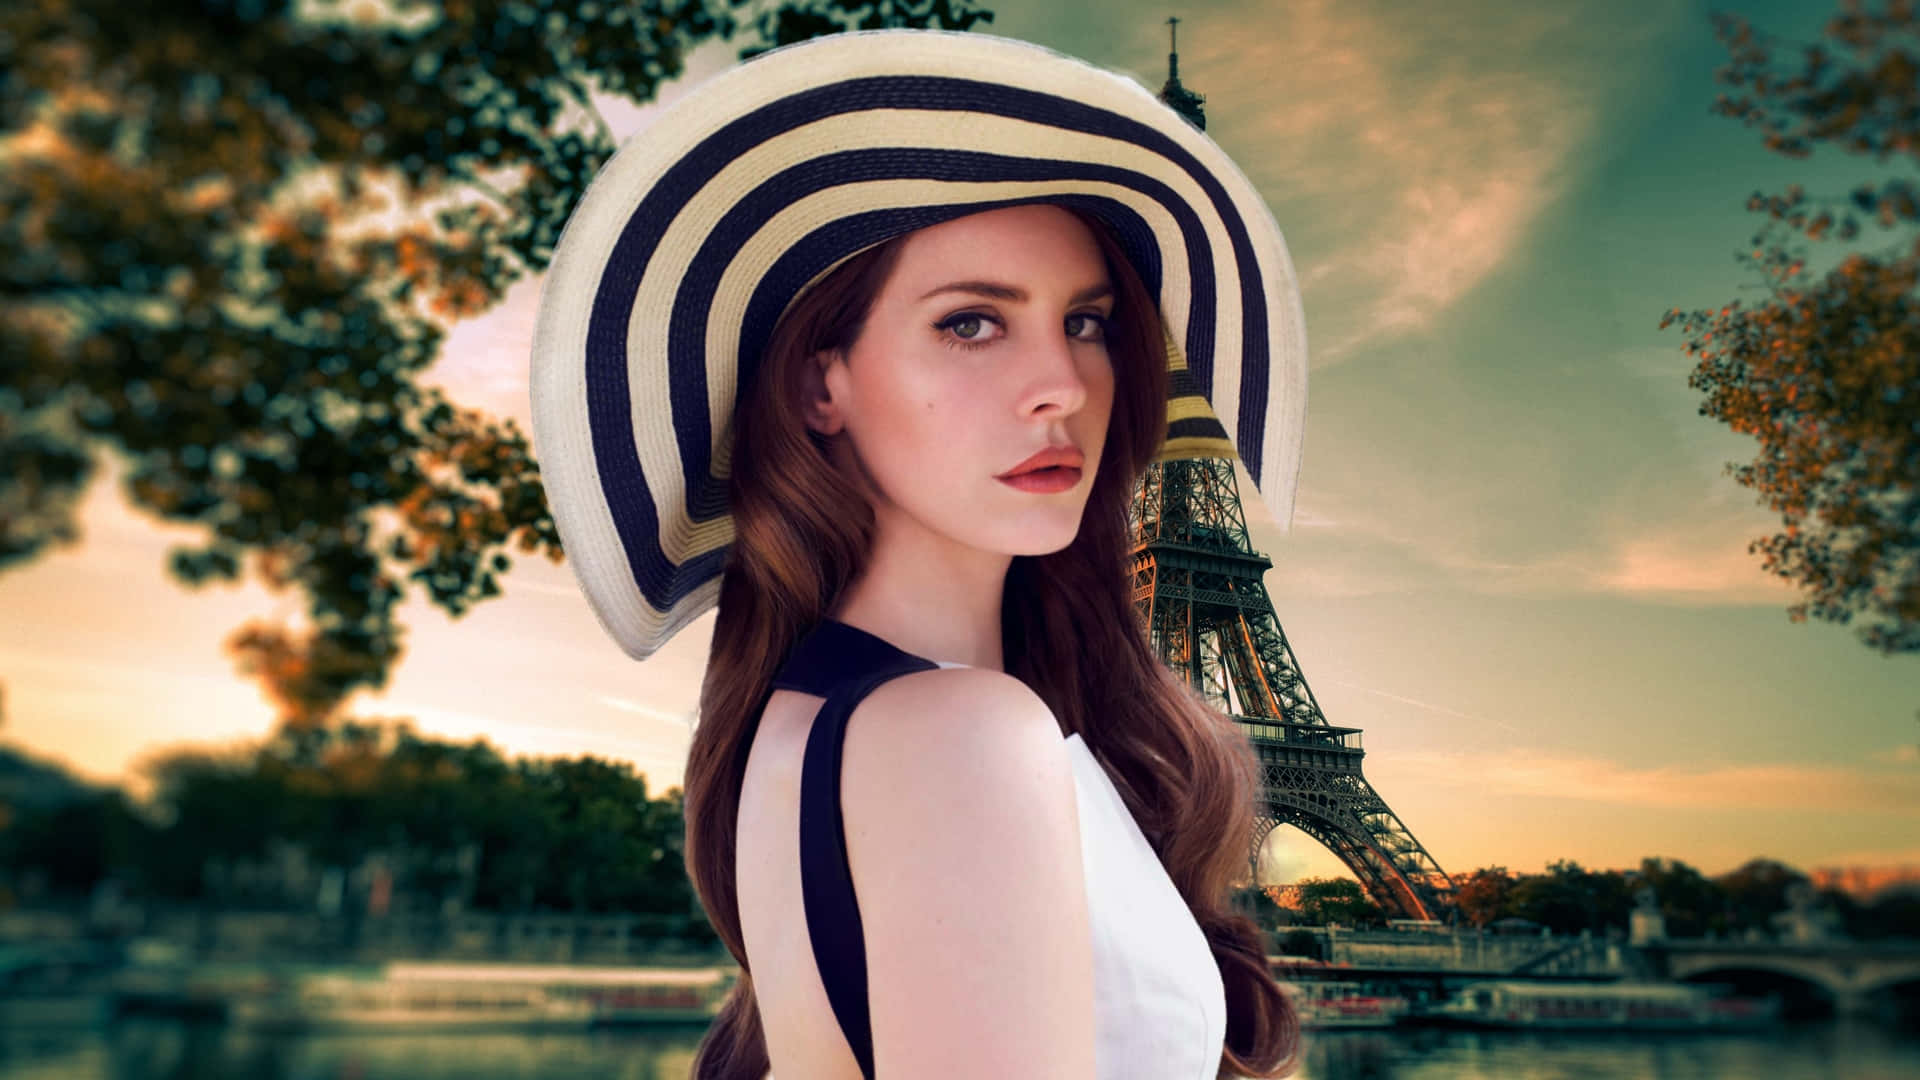 Elegant Woman Parisian Backdrop Wallpaper